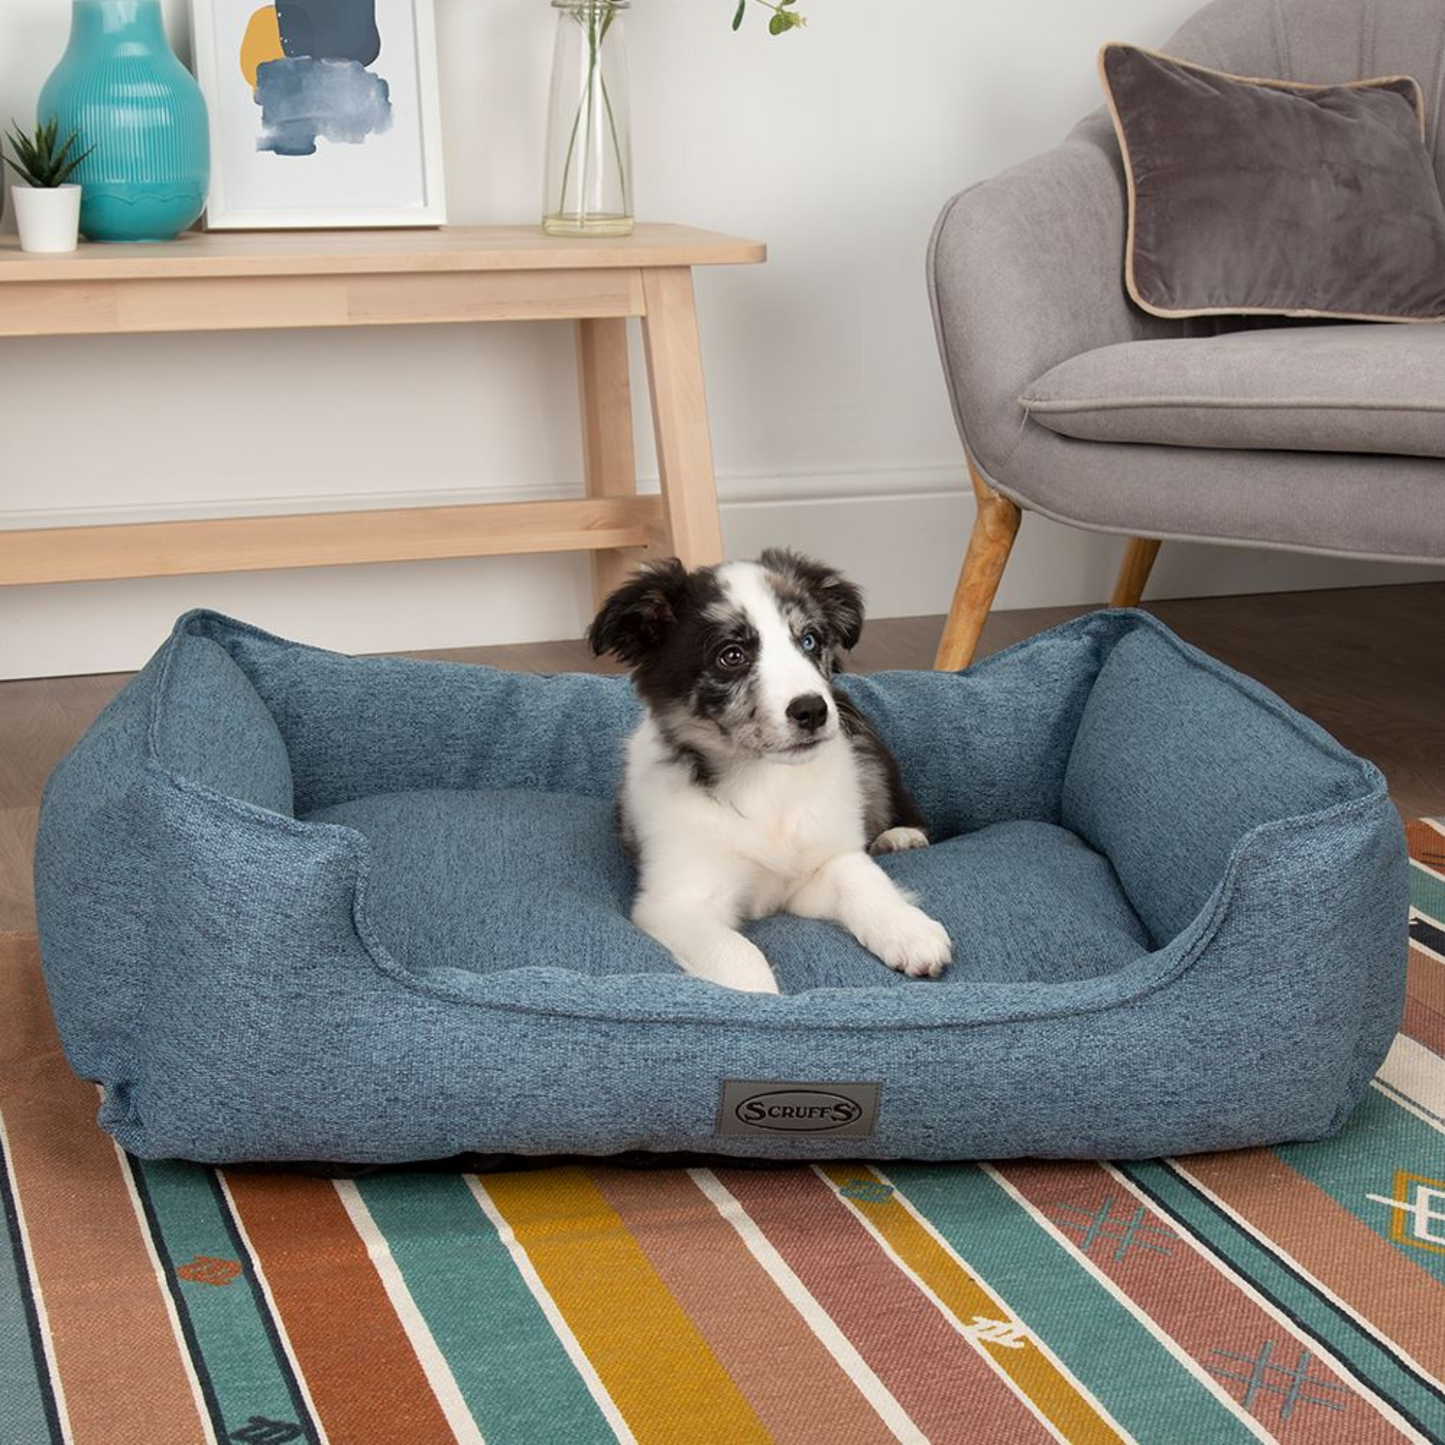 Scruffs Manhattan Box Dog Bed Fully Machine Washable Denim Blue Small & Medium